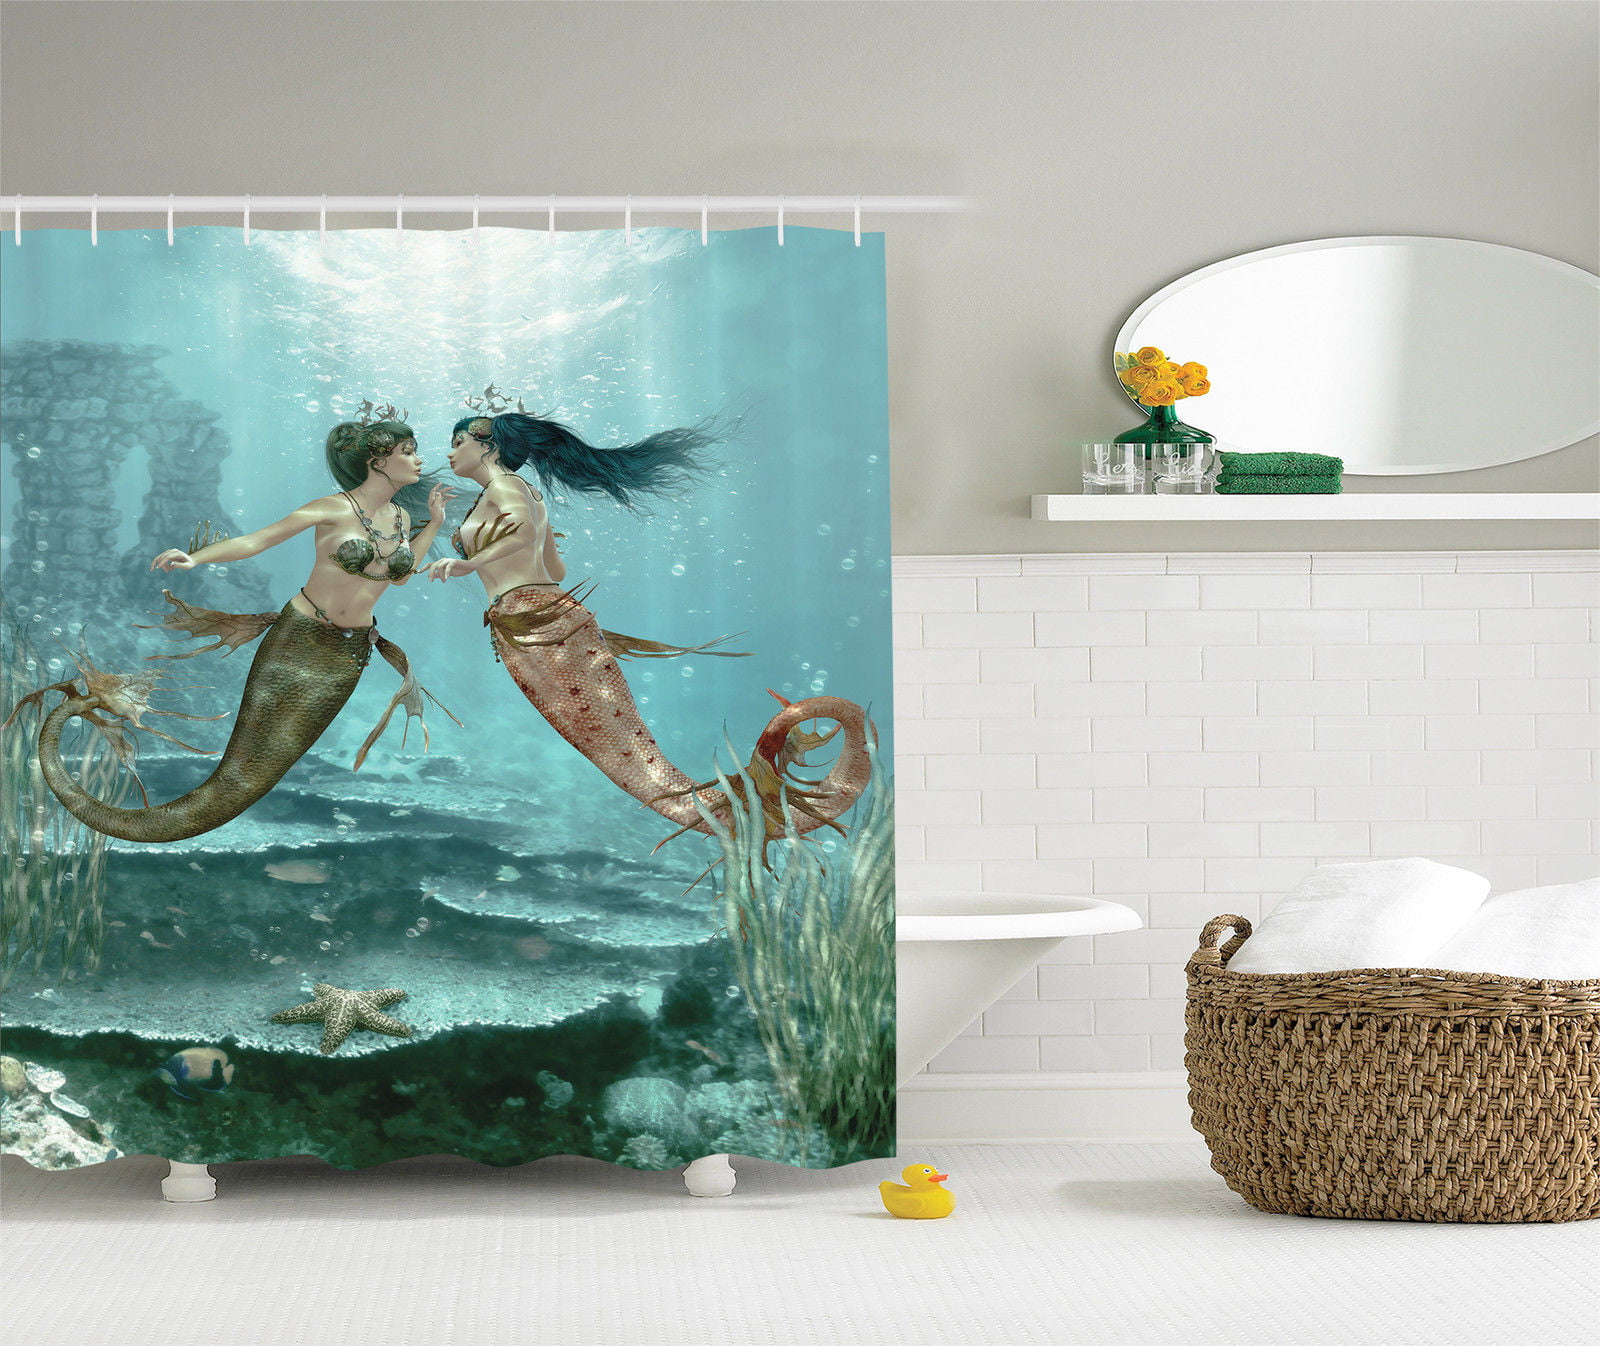 Shower Curtain Bathroom Hooks Set Teal Mermaid Sea Print Cartoon Home Art Decor 